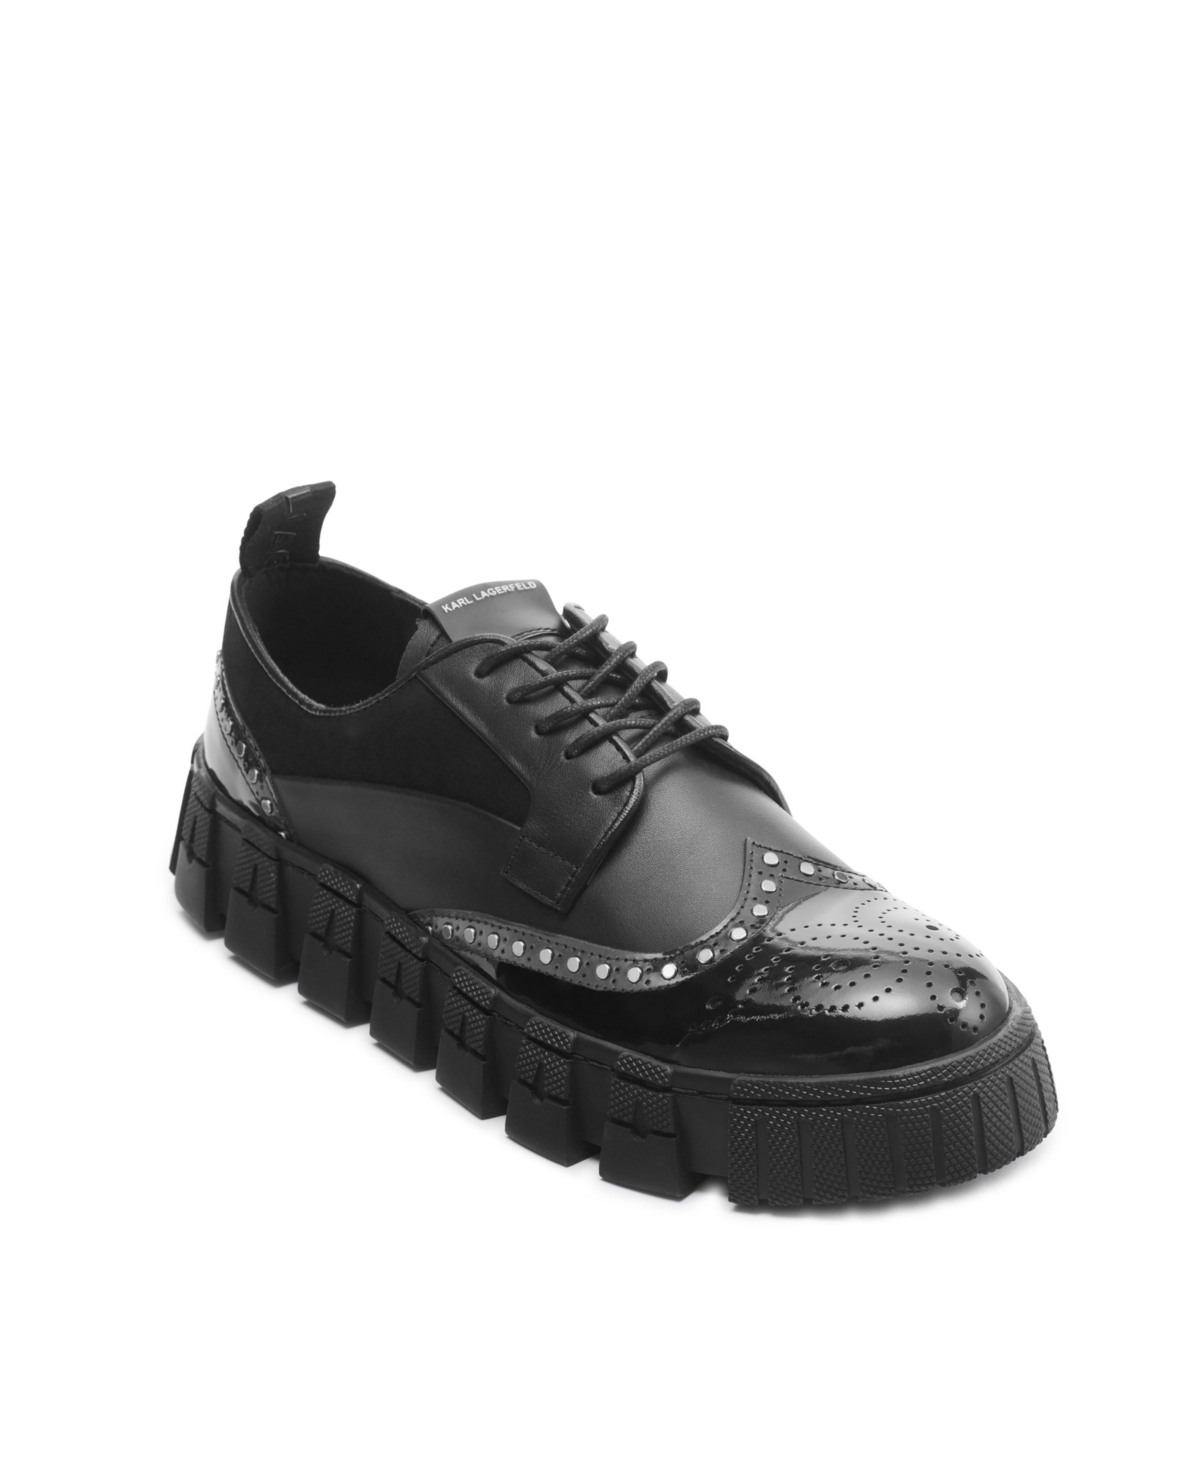 Men's Leather Wingtip Studded Derby Shoes - Black